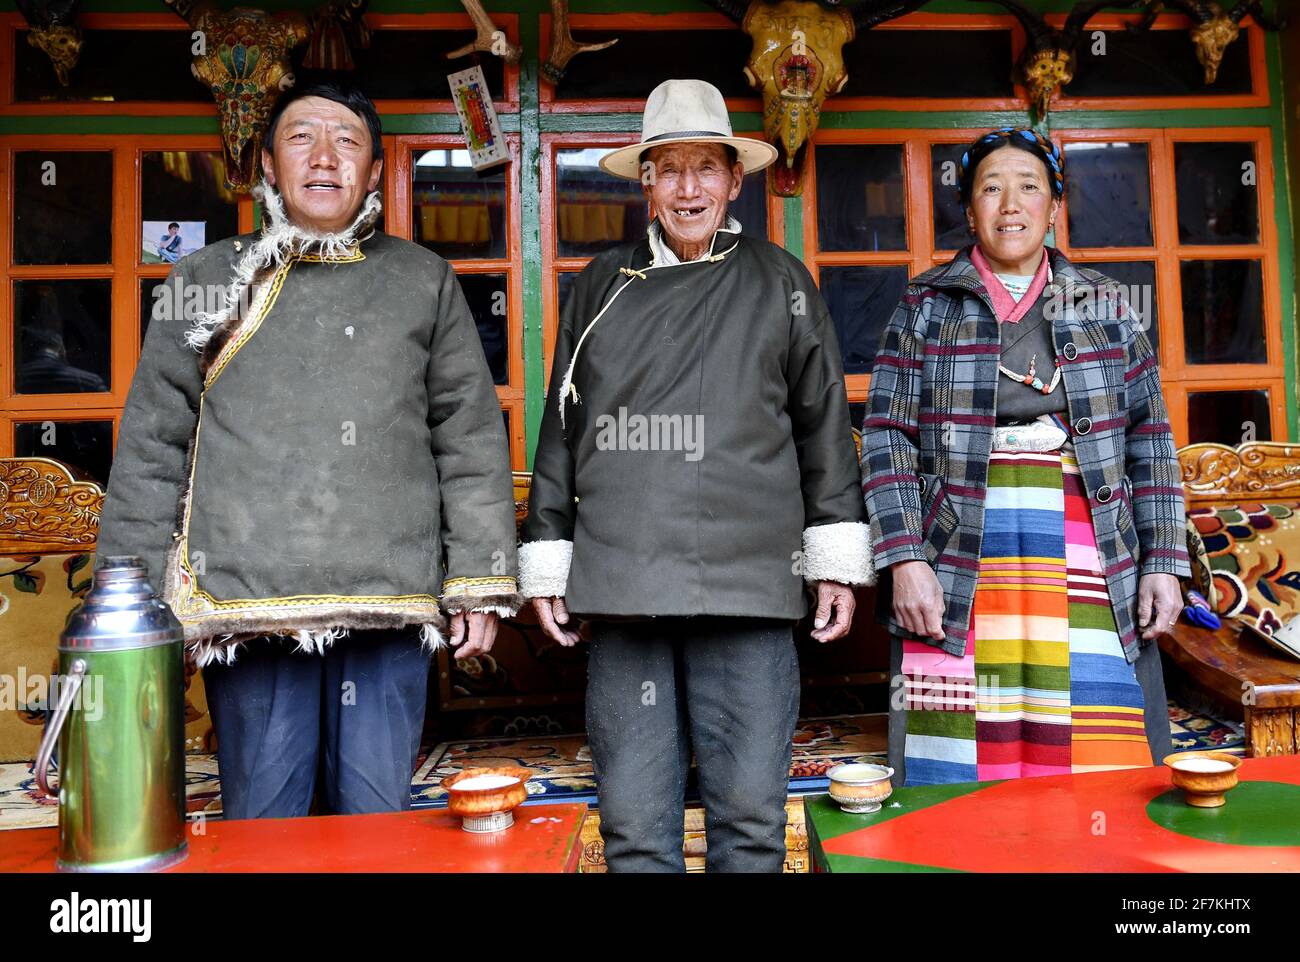 (210408) -- LHASSA, le 8 avril 2021 (Xinhua) -- Dro Dra (C) pose pour une photo avec son fils et sa belle-fille chez lui à Xigaze, dans la région autonome du Tibet du sud-ouest de la Chine, le 20 mars 2021. DRO Dra, un villageois de 85 ans à Xigaze, était autrefois un serf dans le vieux Tibet. De retour à l'époque, malgré le dur labeur toute l'année, la famille de Dro Dra ne pouvait pas avoir un grain d'orge de haute terre qu'ils ont grandi pour eux-mêmes. Année après année, ils ont lutté dans un cercle vicieux d'emprunter de la nourriture, de payer des impôts au seigneur et de retourner de la nourriture. 'L'eau bouillante exige du bois de chauffage, mais chaque herbe et arbre dans le manoir b Banque D'Images